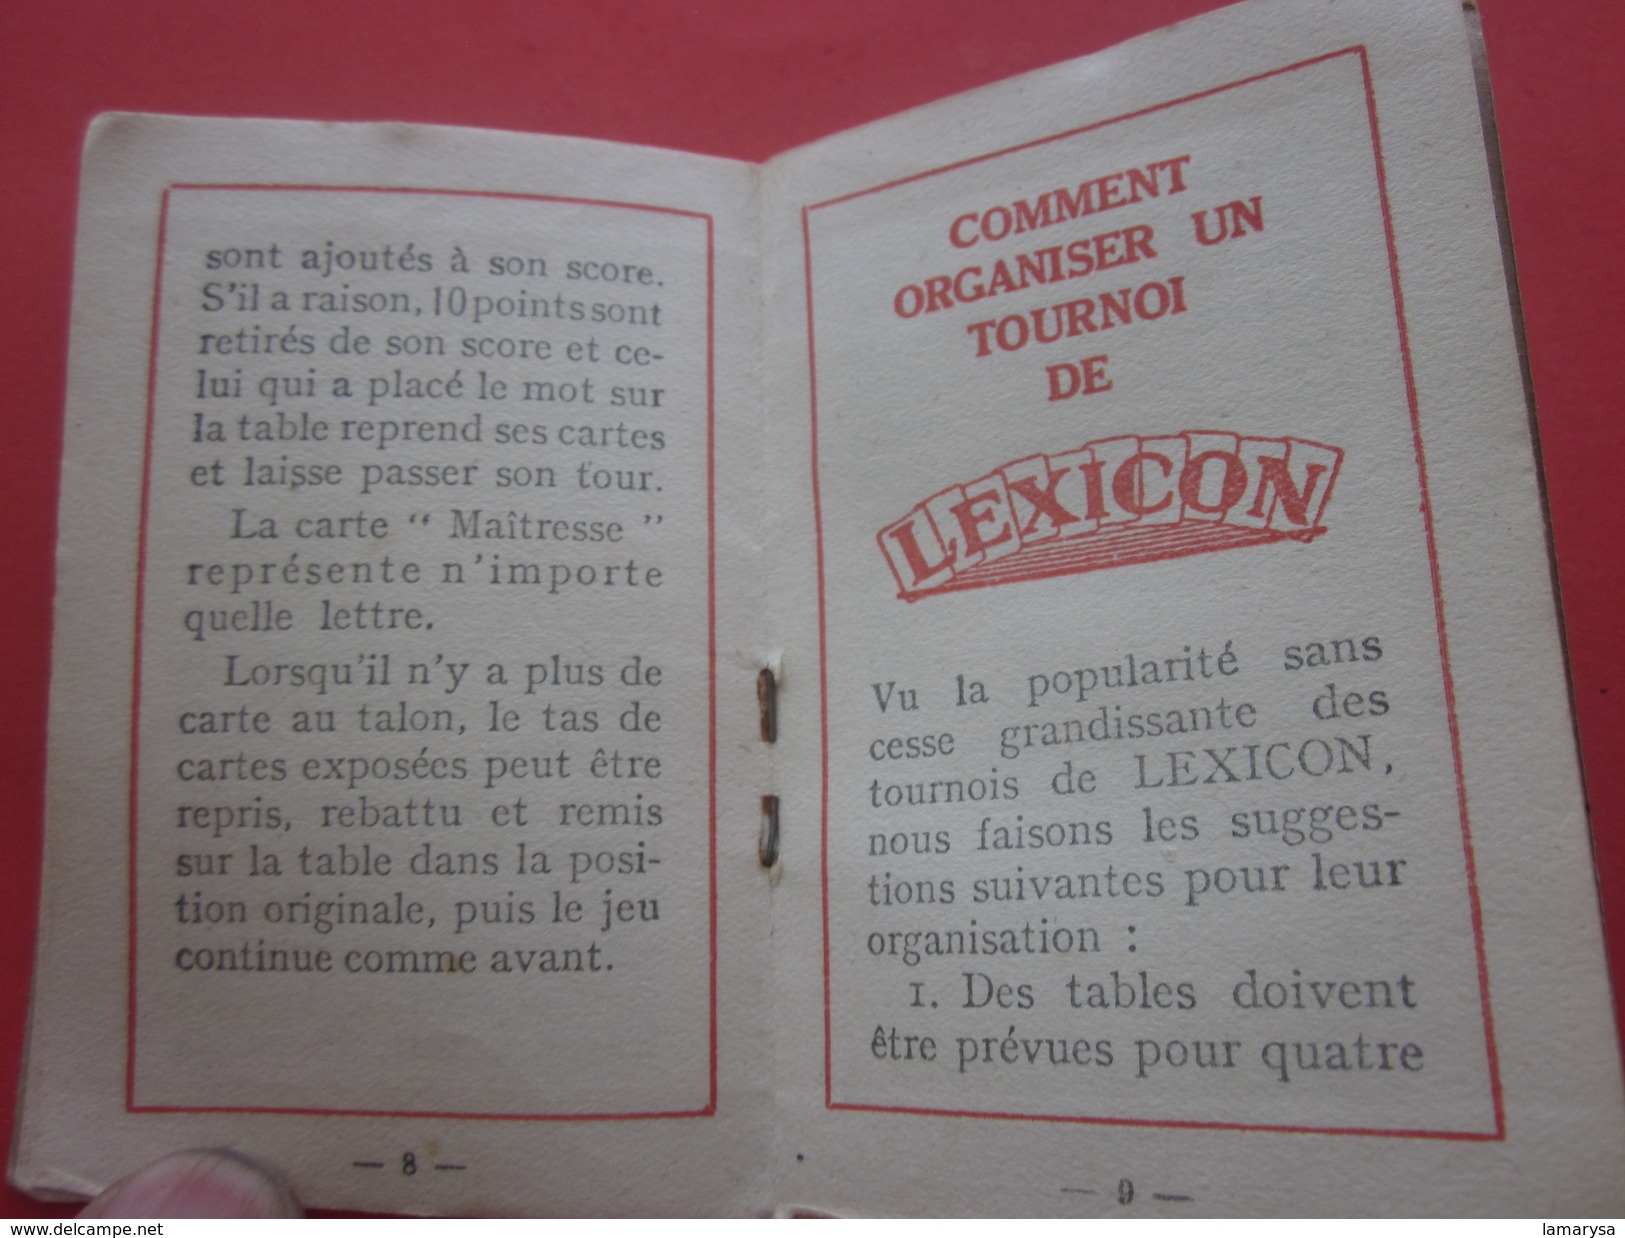 Cartes Jeu de Lettres LEXICON Miro 1937 avec carnet de la Règle du Jeu et Boite d'origine(complet 51+3 cartes)